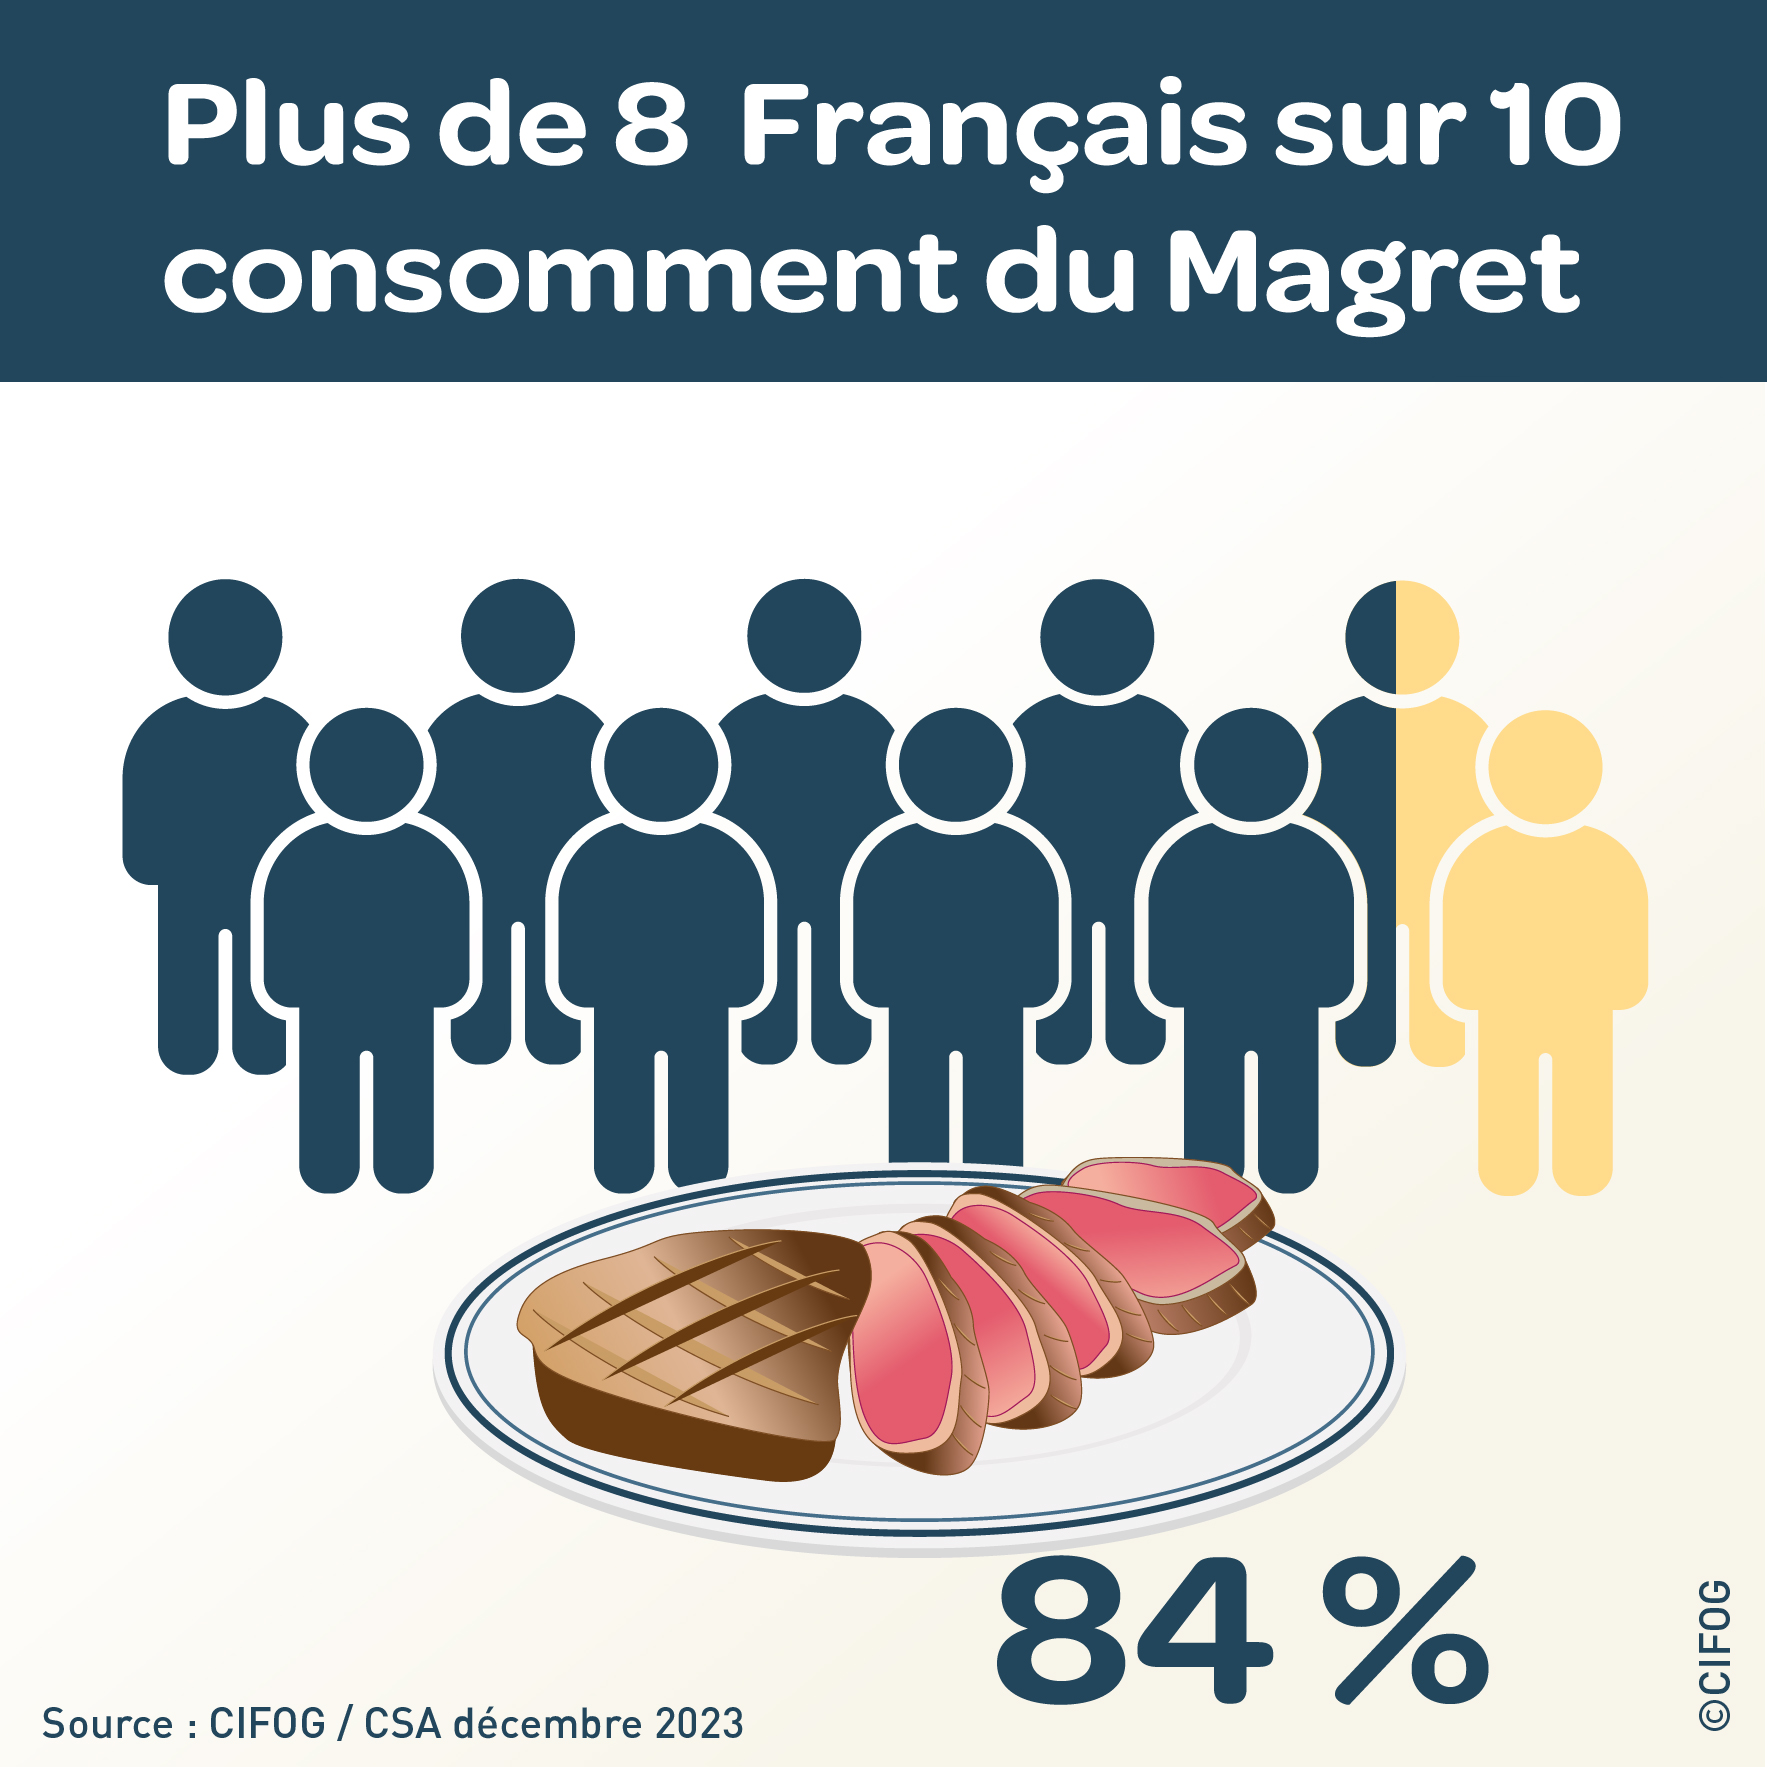 Info_Magret_CIFOG _plus_de_8_francais_sur_10_consomment_du_magret